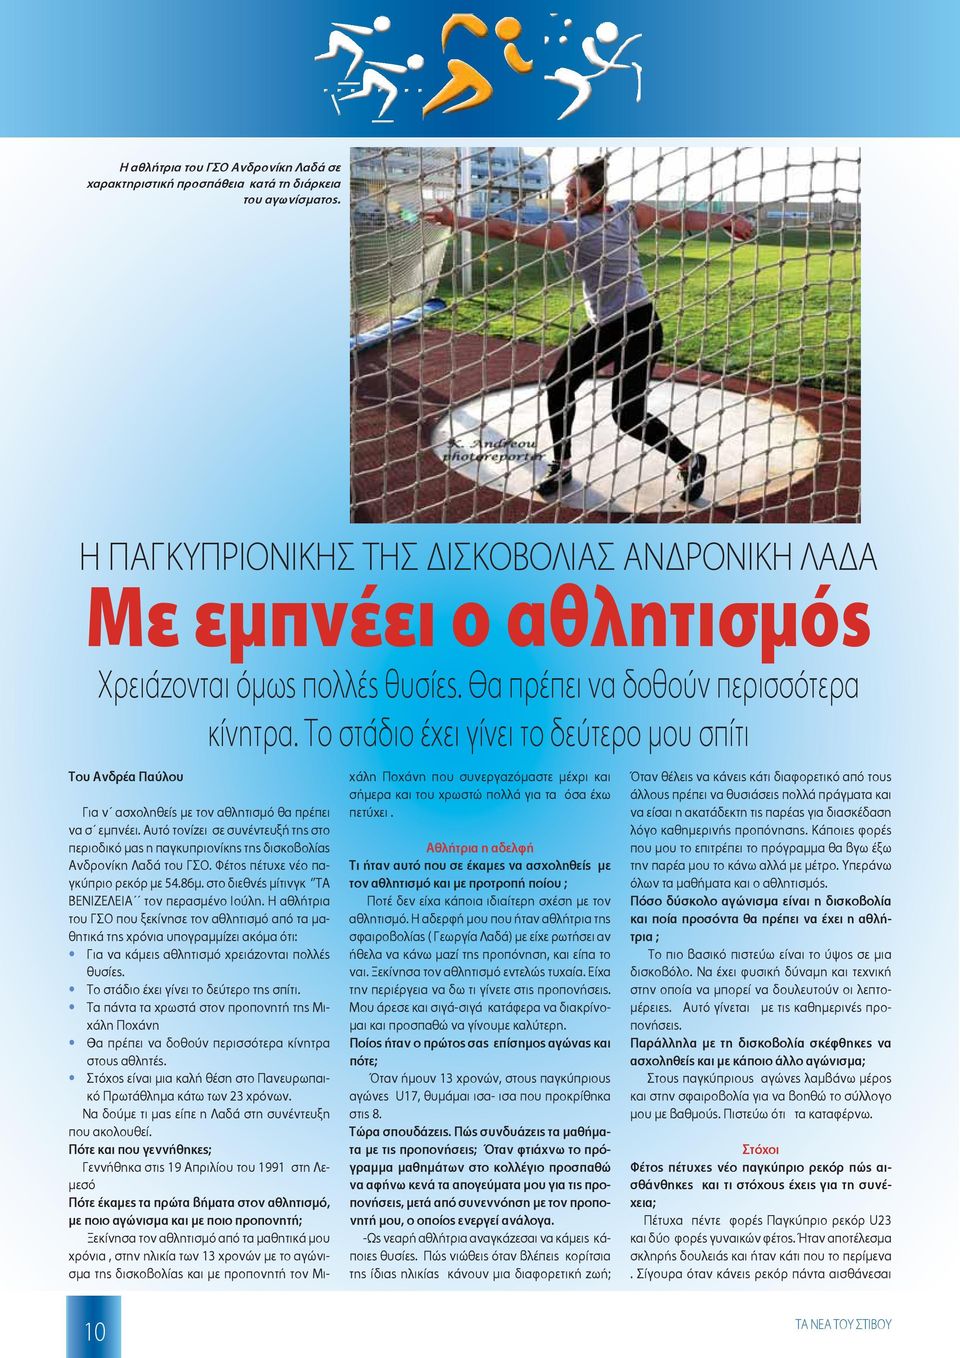 Αυτό τονίζει σε συνέντευξή της στο περιοδικό μας η παγκυπριονίκης της δισκοβολίας Ανδρονίκη Λαδά του ΓΣΟ. Φέτος πέτυχε νέο παγκύπριο ρεκόρ με 54.86μ.